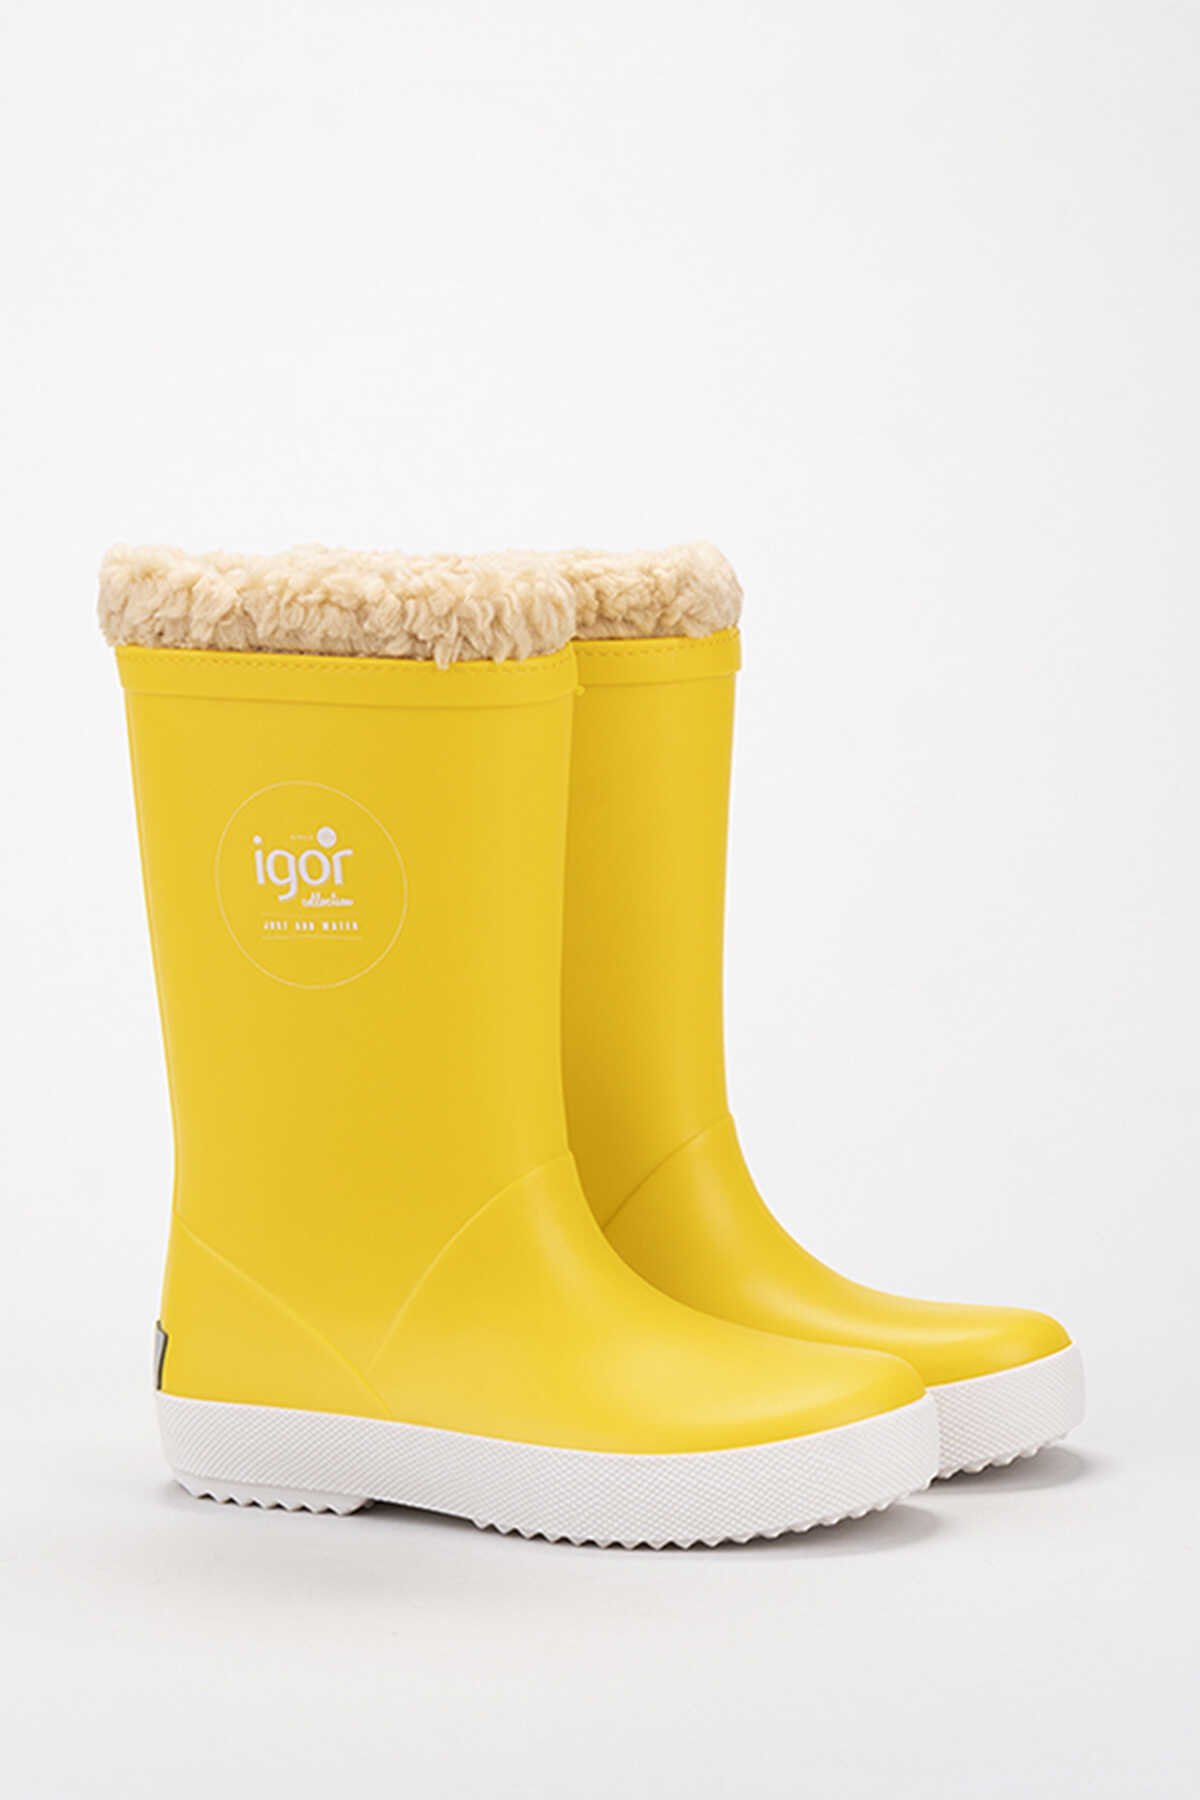 Igor - Igor SPLASHNAUTICO Yağmur Çizmesi Kız Çocuk Ayakkabı Sarı